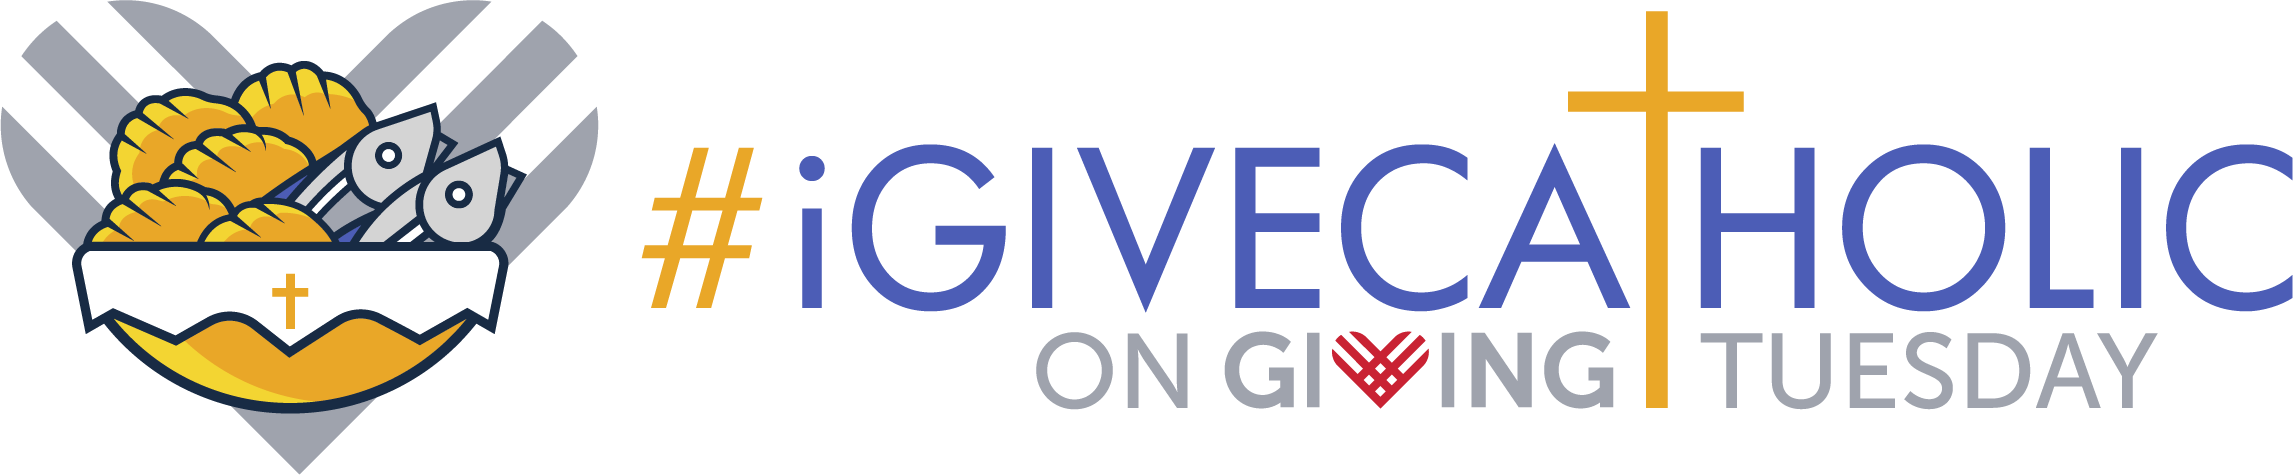 #iGiveCatholic on Giving Tuesday Logo